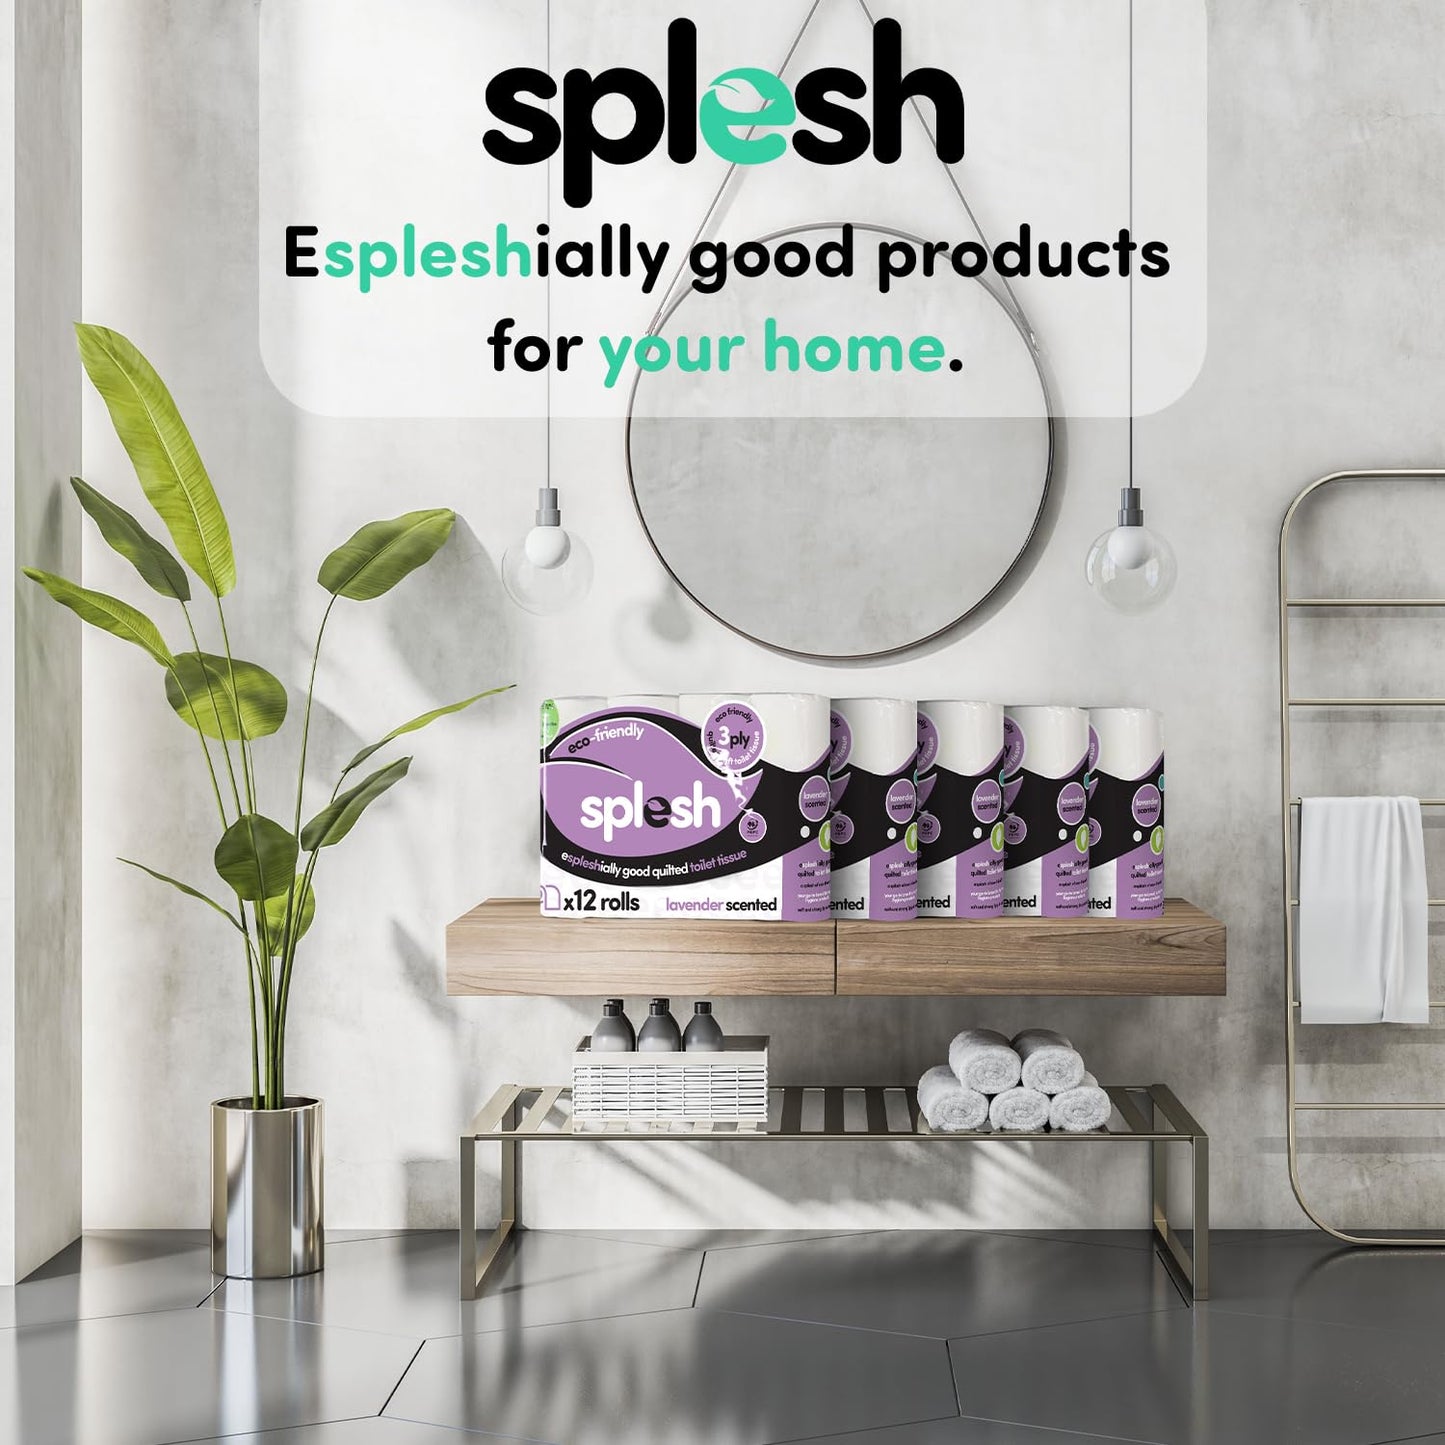 Splesh by Cusheen 3-ply Toilet Roll - Lavender Fragrance (60 Pack)